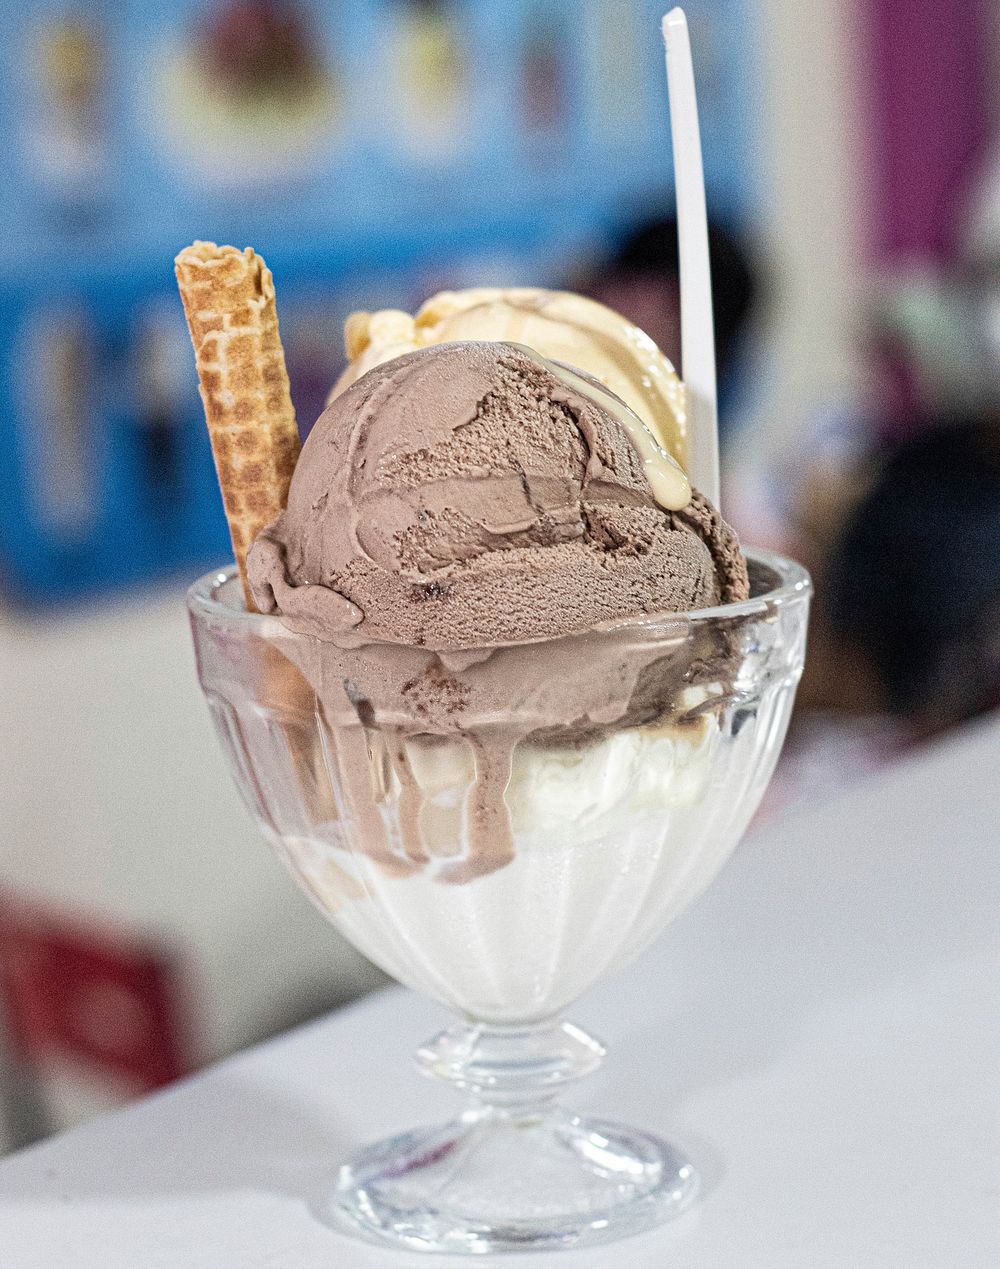 Free ice-cream sundae image, public domain CC0 photo.